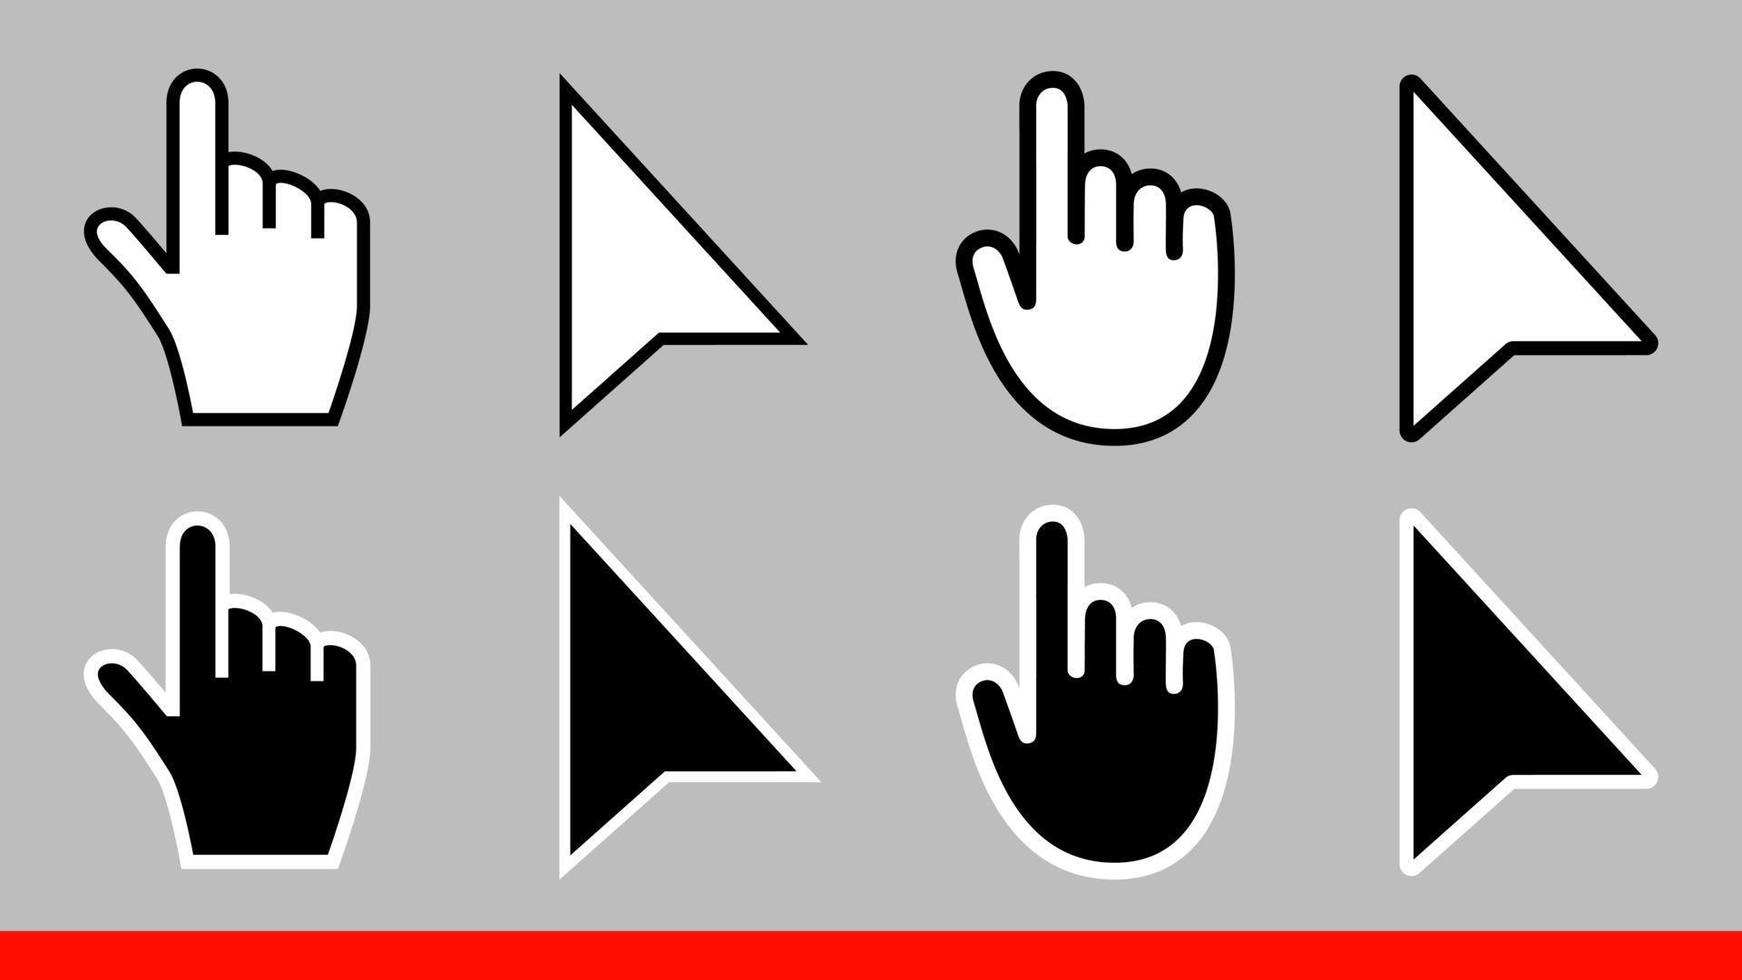 8 seta preto e branco nenhum pixel mouse mão cursores ícones ilustração vetorial definir design de estilo plano isolado no fundo branco. vetor